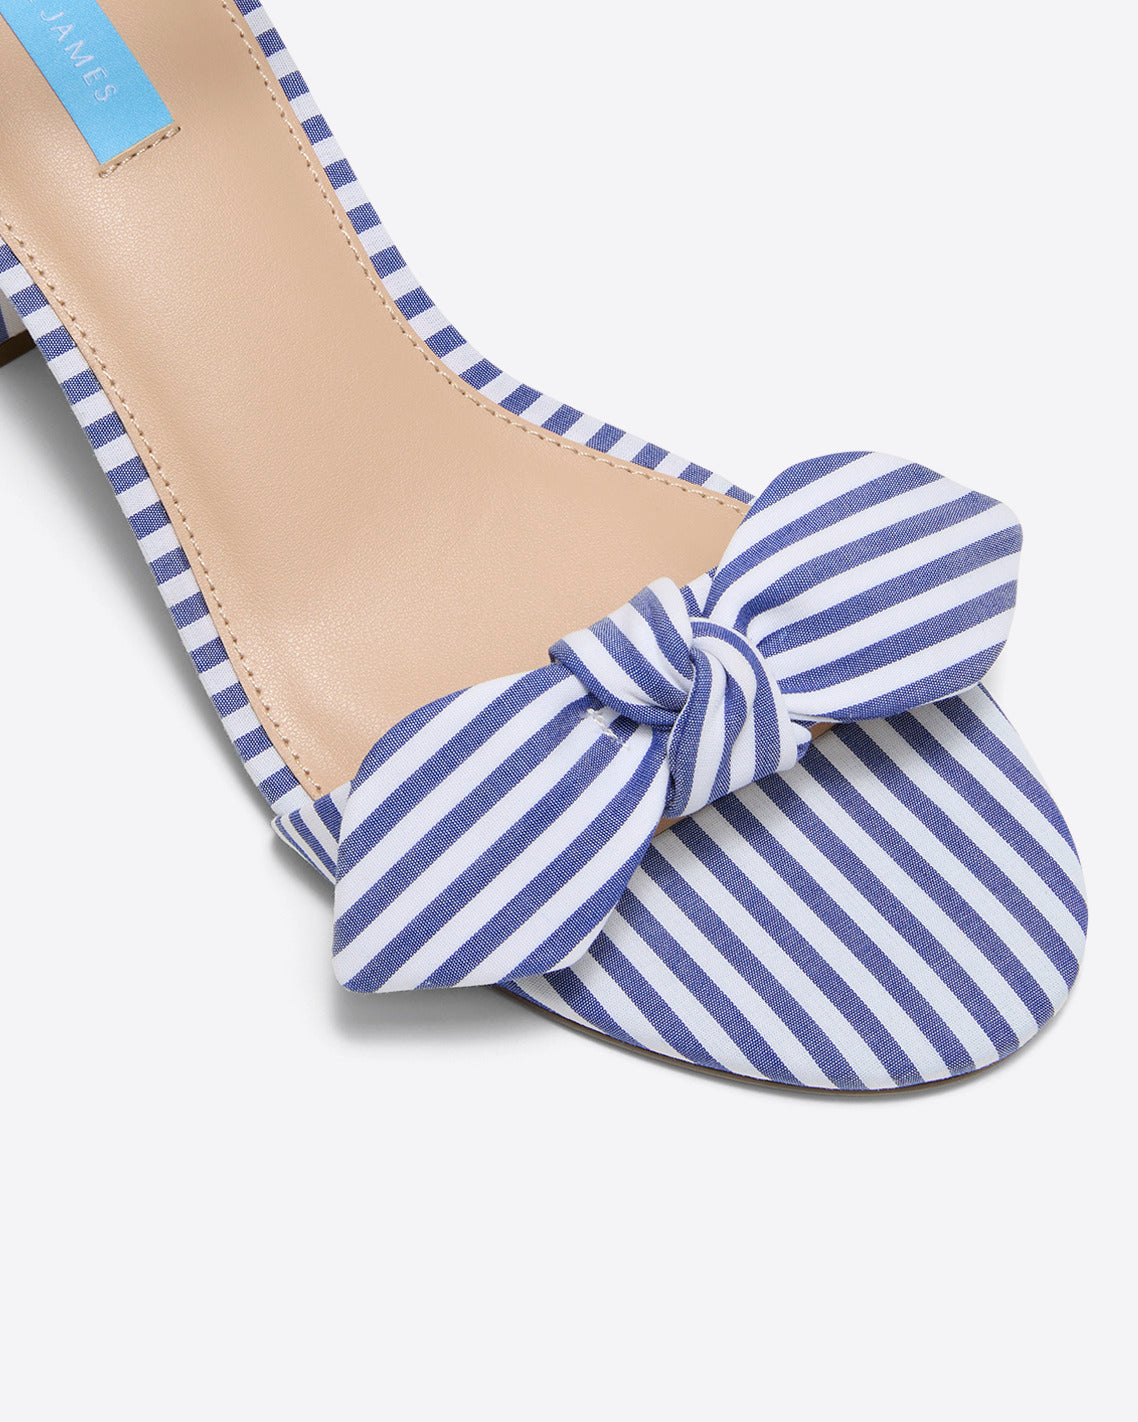 Preston Sandal in Blue & White Stripe